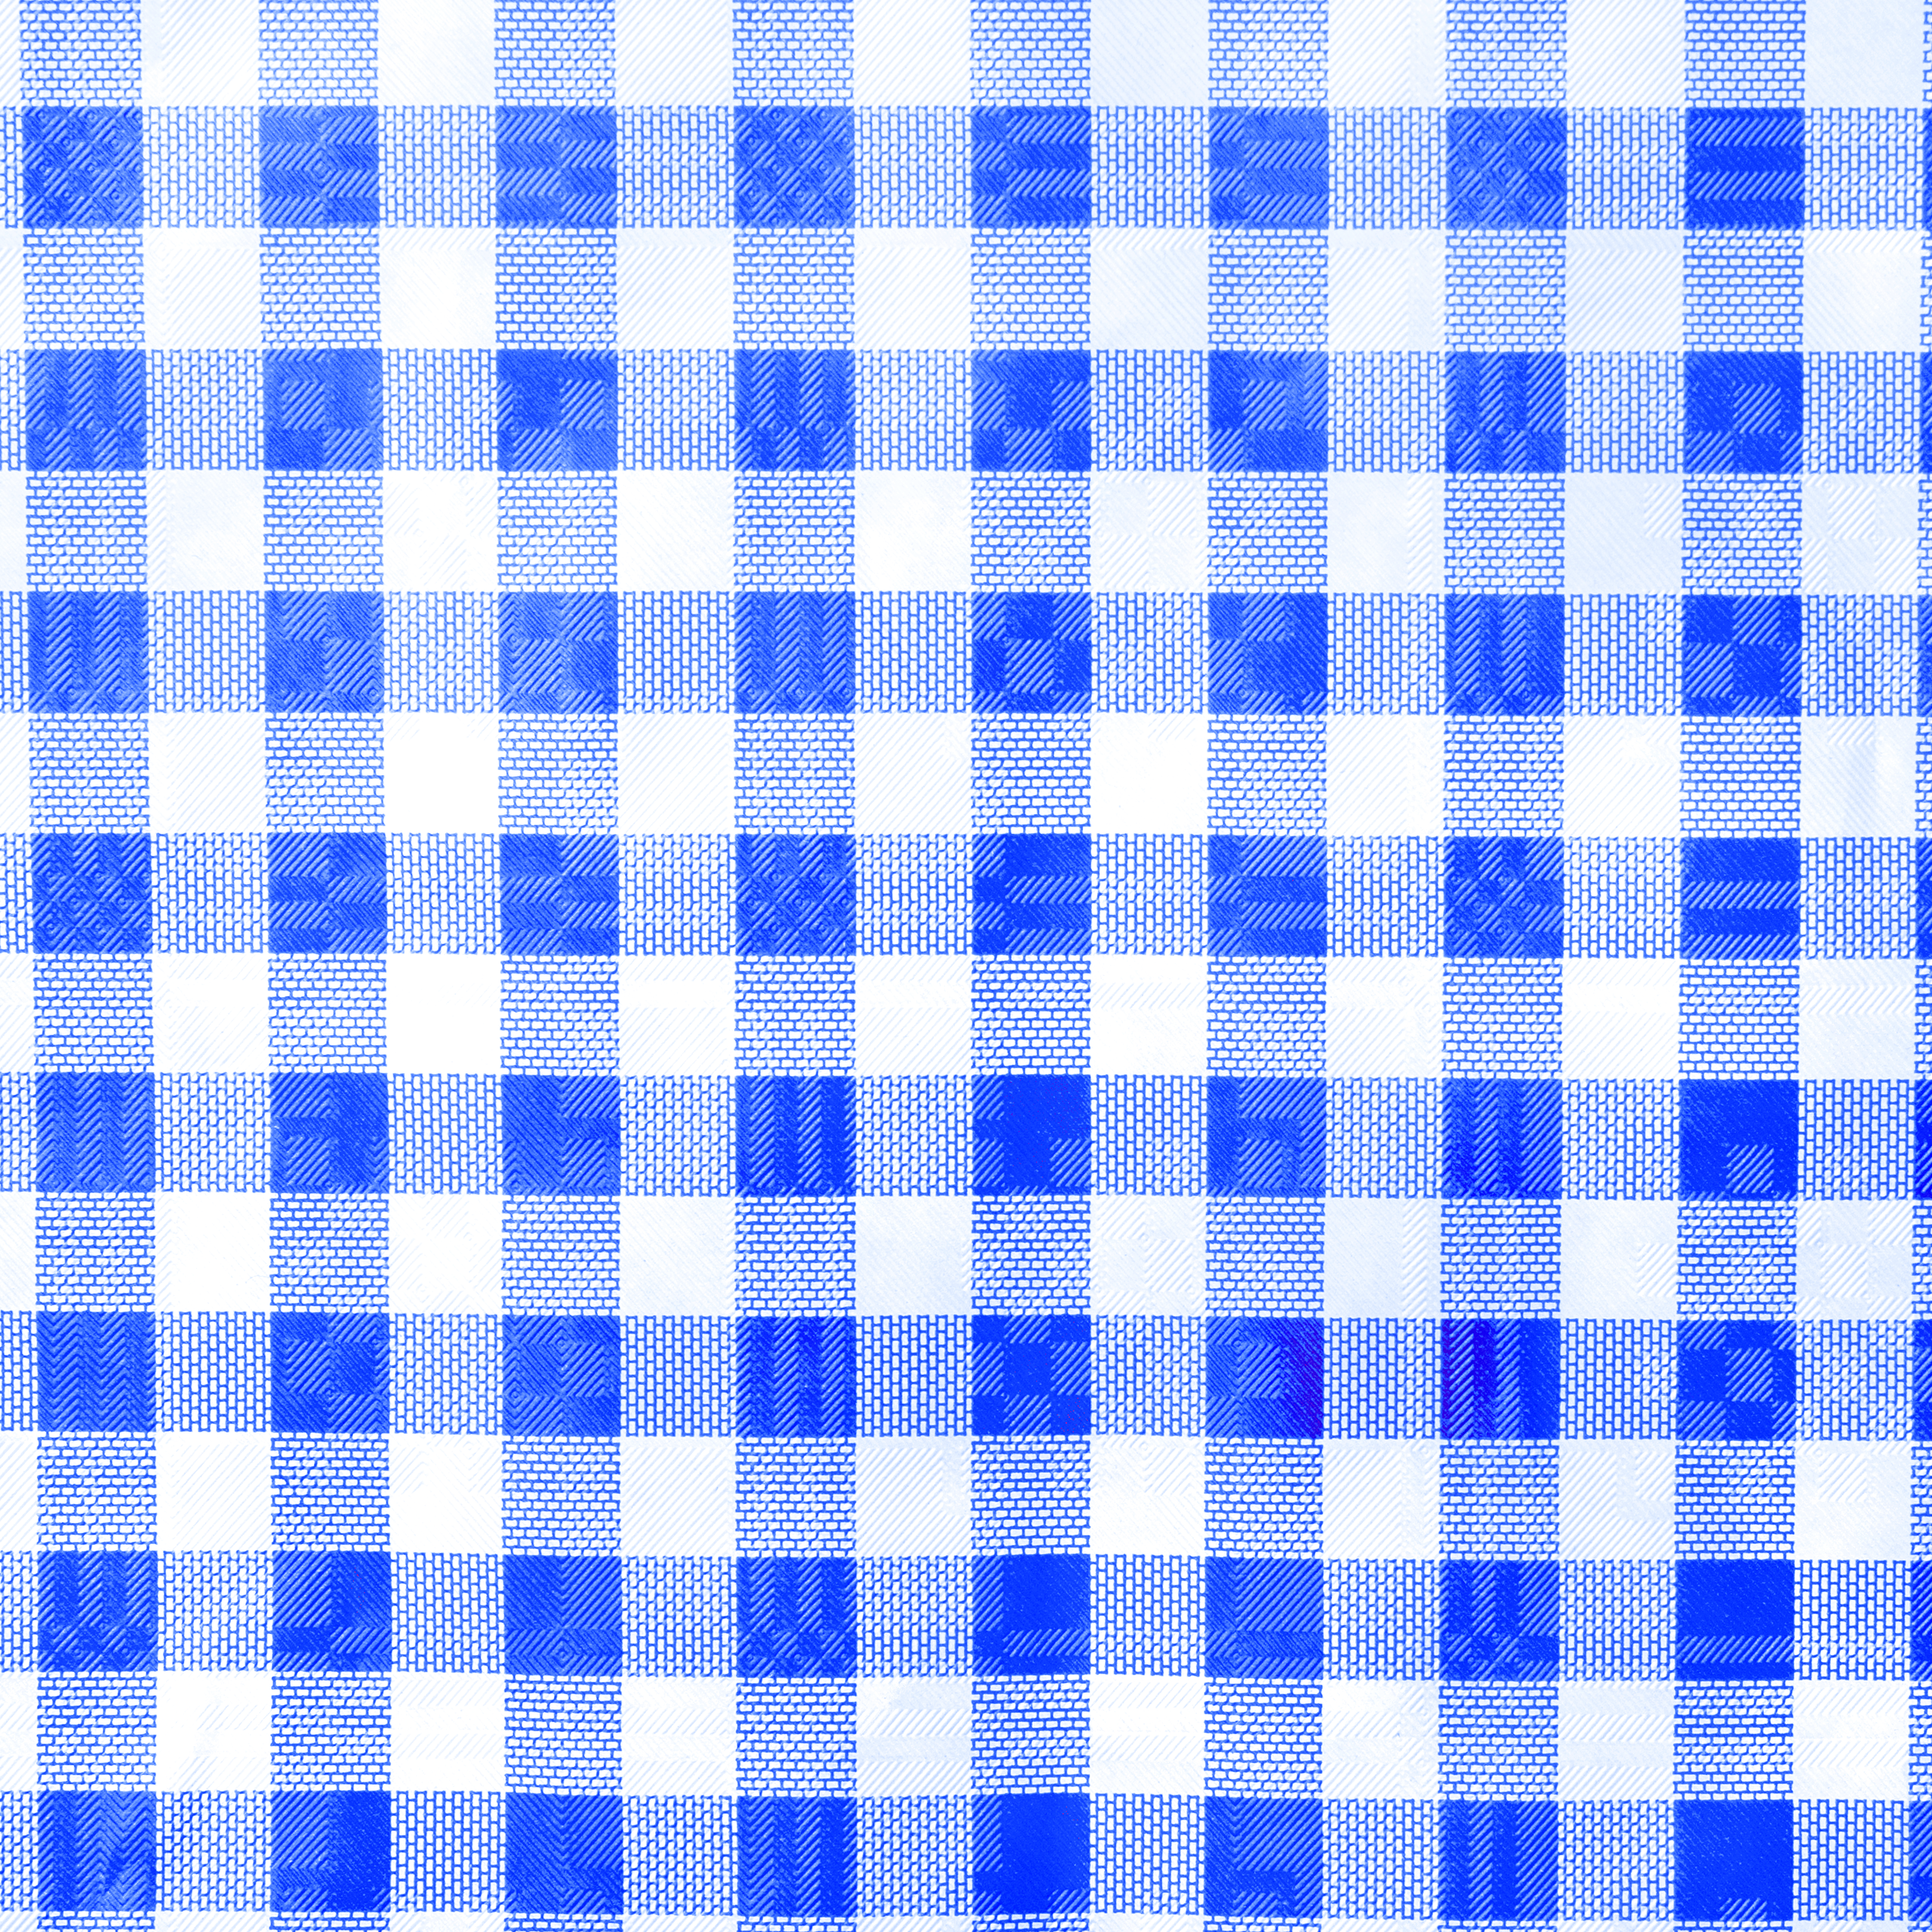 Tischtuchpapier karo blau/weiß, 1 x 10 m